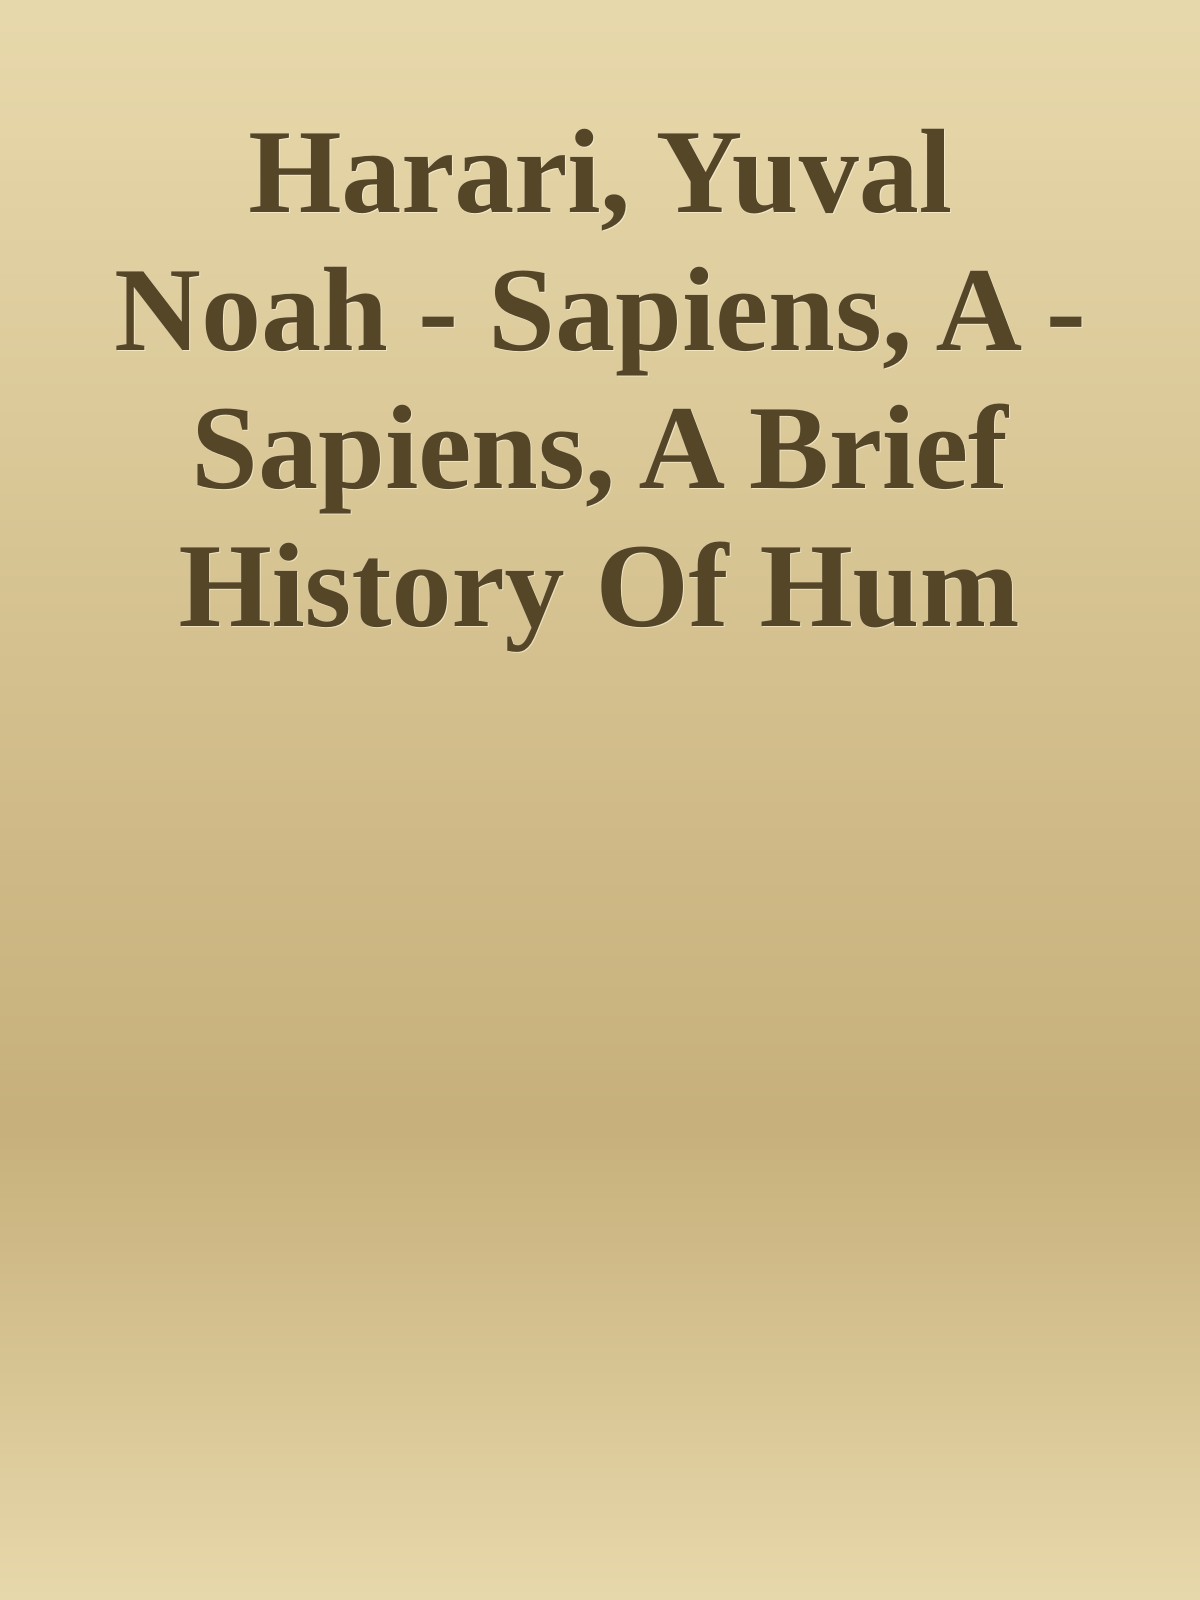 Harari, Yuval Noah - Sapiens, A - Sapiens, A Brief History Of Hum